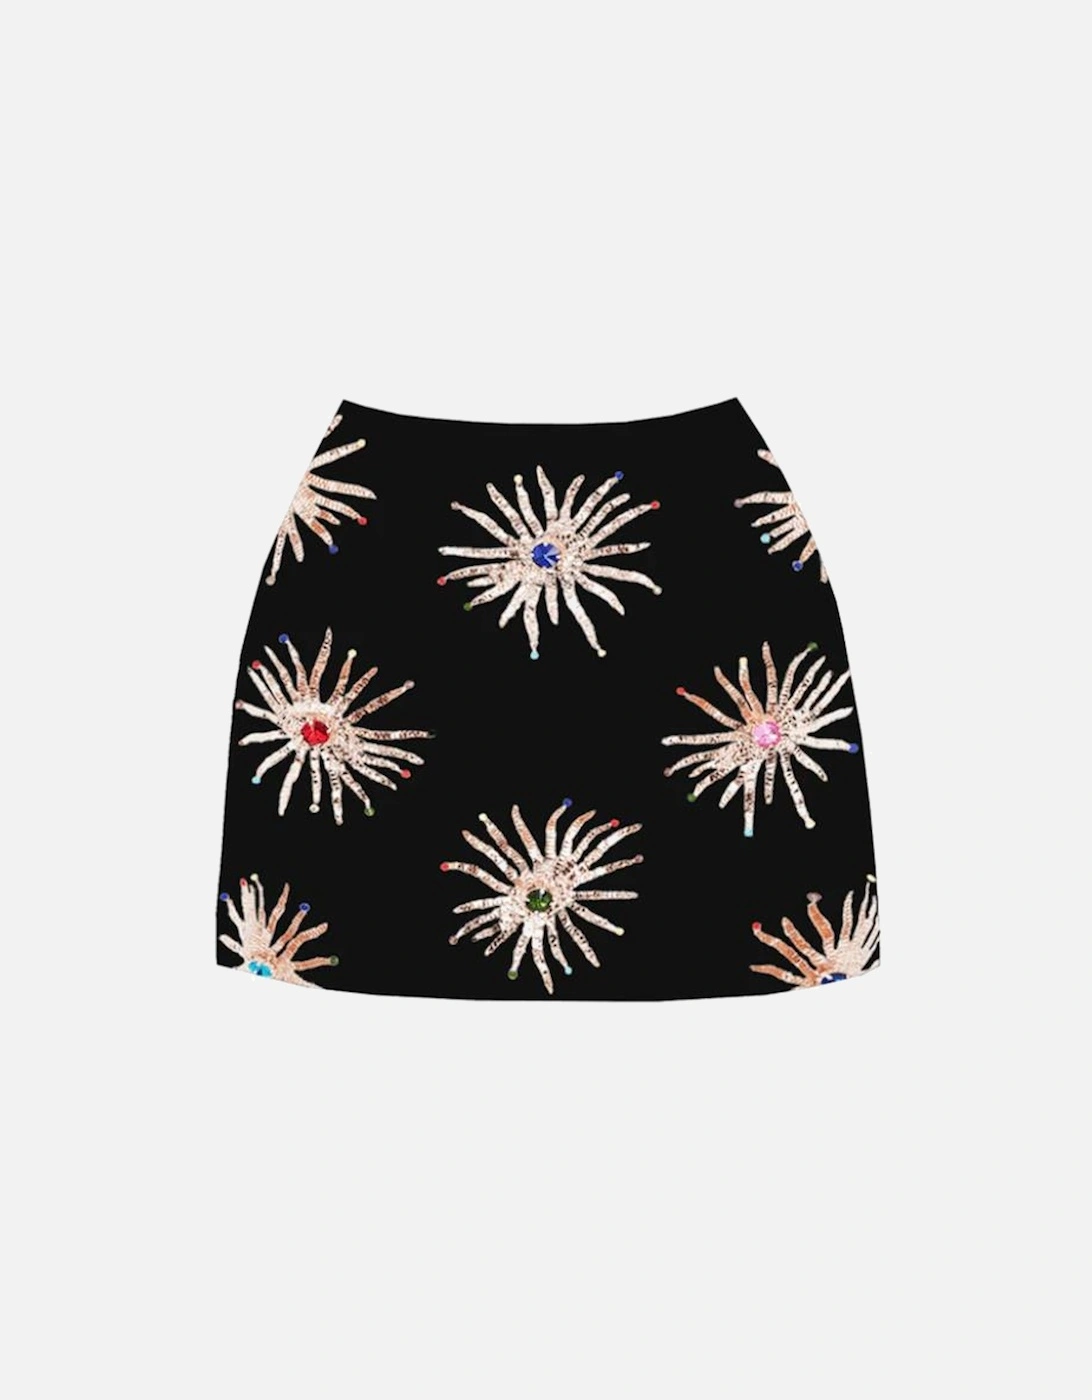 Oceanus Women's Callie Co-ord Skirt Black - Size: 18/16/16/None